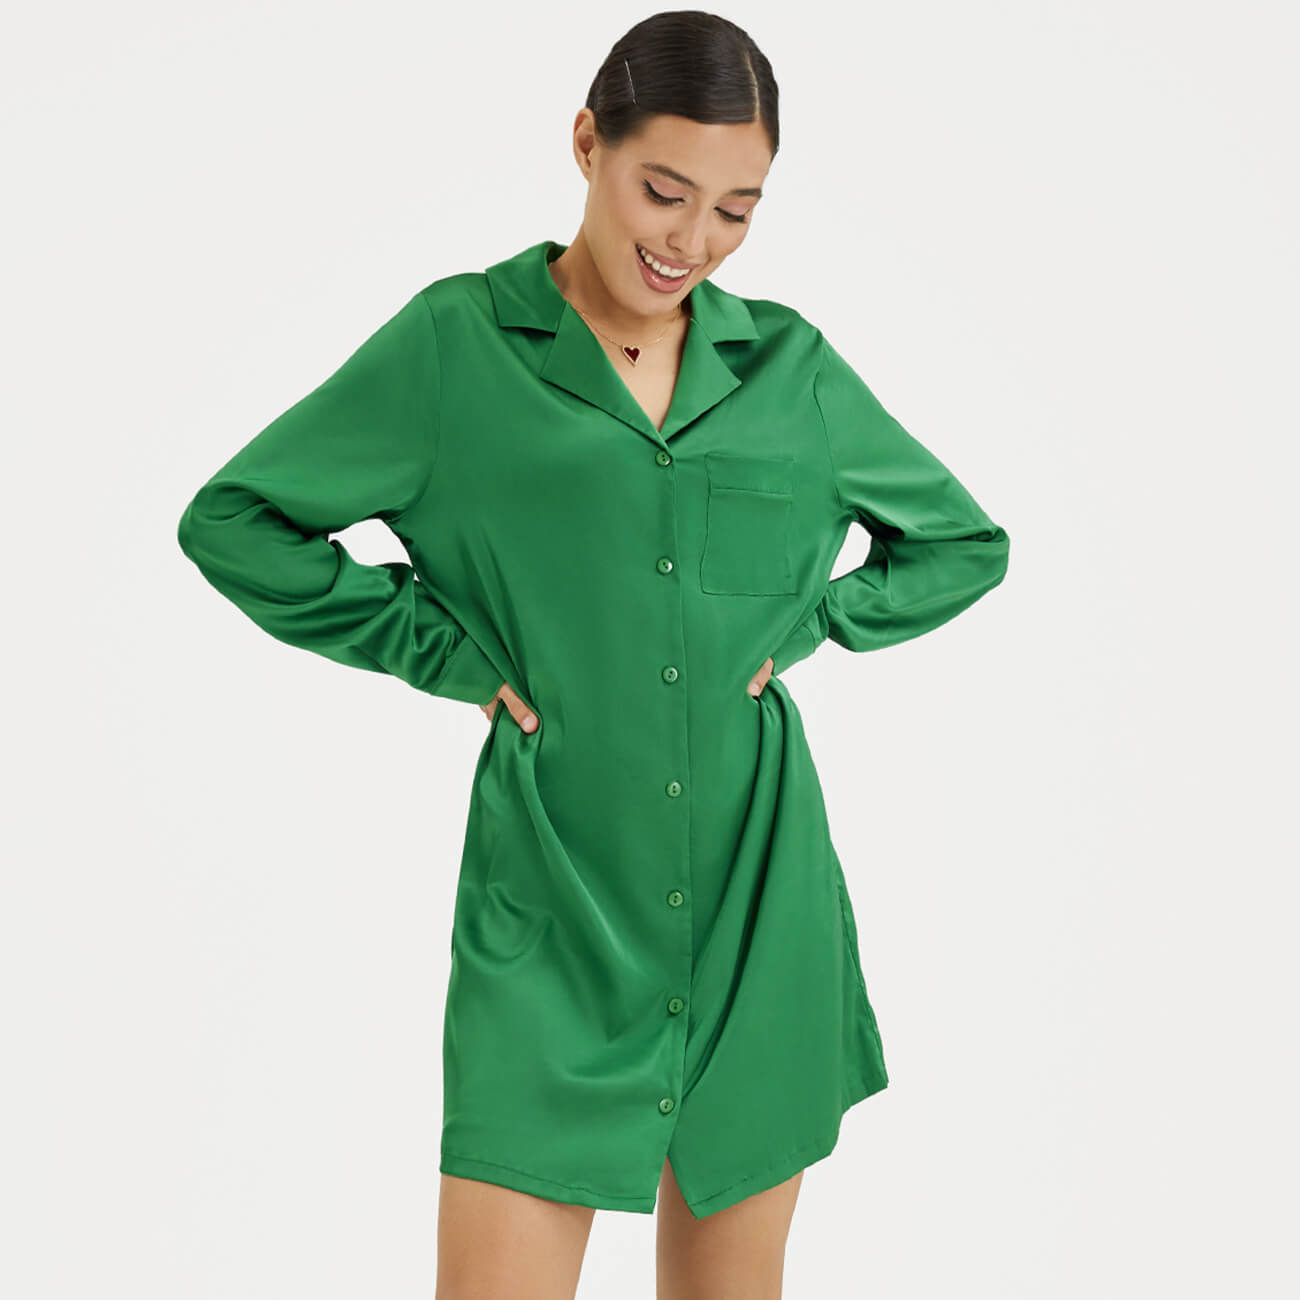 Рубашка женская, р. XL, удлиненная, с длинным рукавом, полиэстер/эластан, зеленая, Madeline zanzea женщины повседневный откидной воротник с длинным рукавом рубашка платье